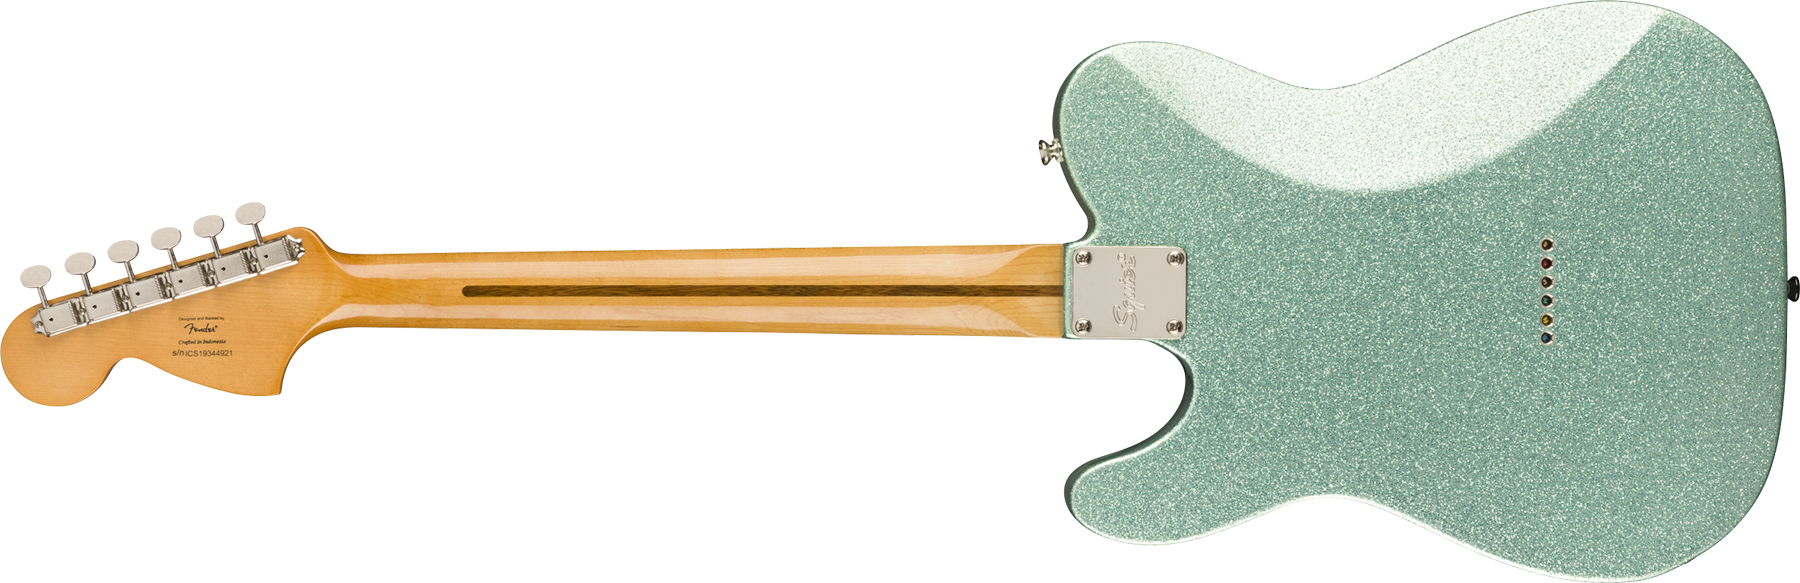 Squier Tele Deluxe Classic Vibe 70 Fsr Ltd 2020 Hh Htmn - Seafoam Sparkle - Tel shape electric guitar - Variation 1